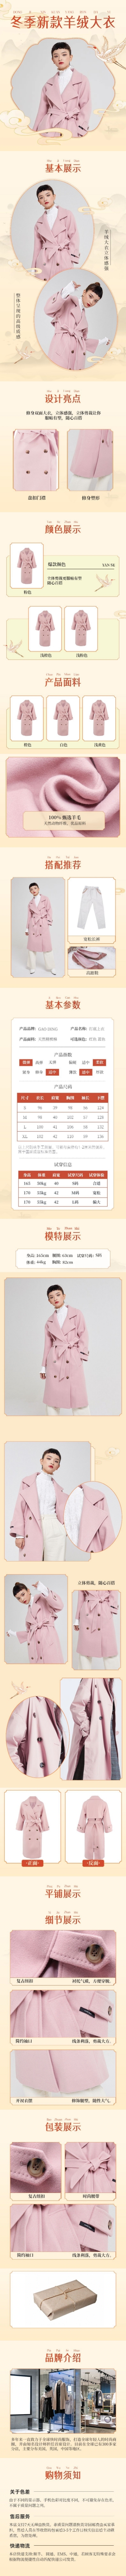 中国风冬季服装女装大衣详情页